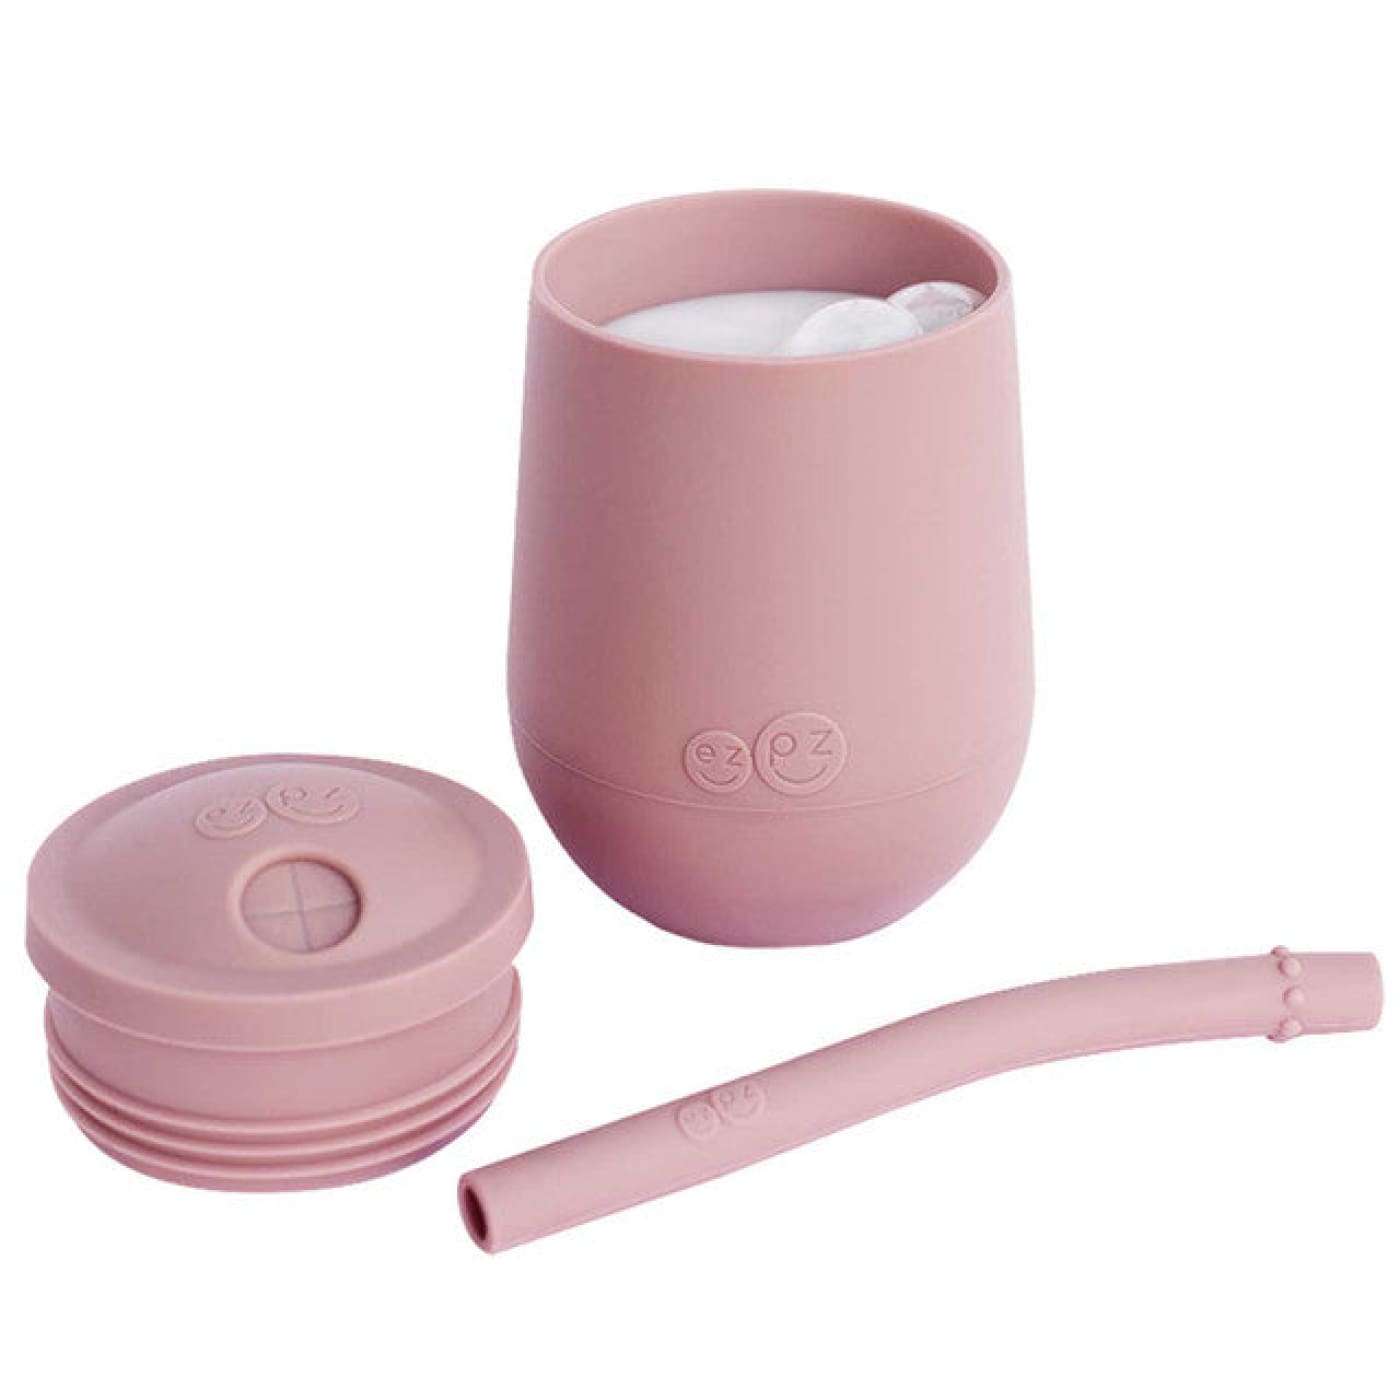 EZPZ Mini Cup + Straw Training System - Blush - Blush - NURSING & FEEDING - CUTLERY/PLATES/BOWLS/TOYS